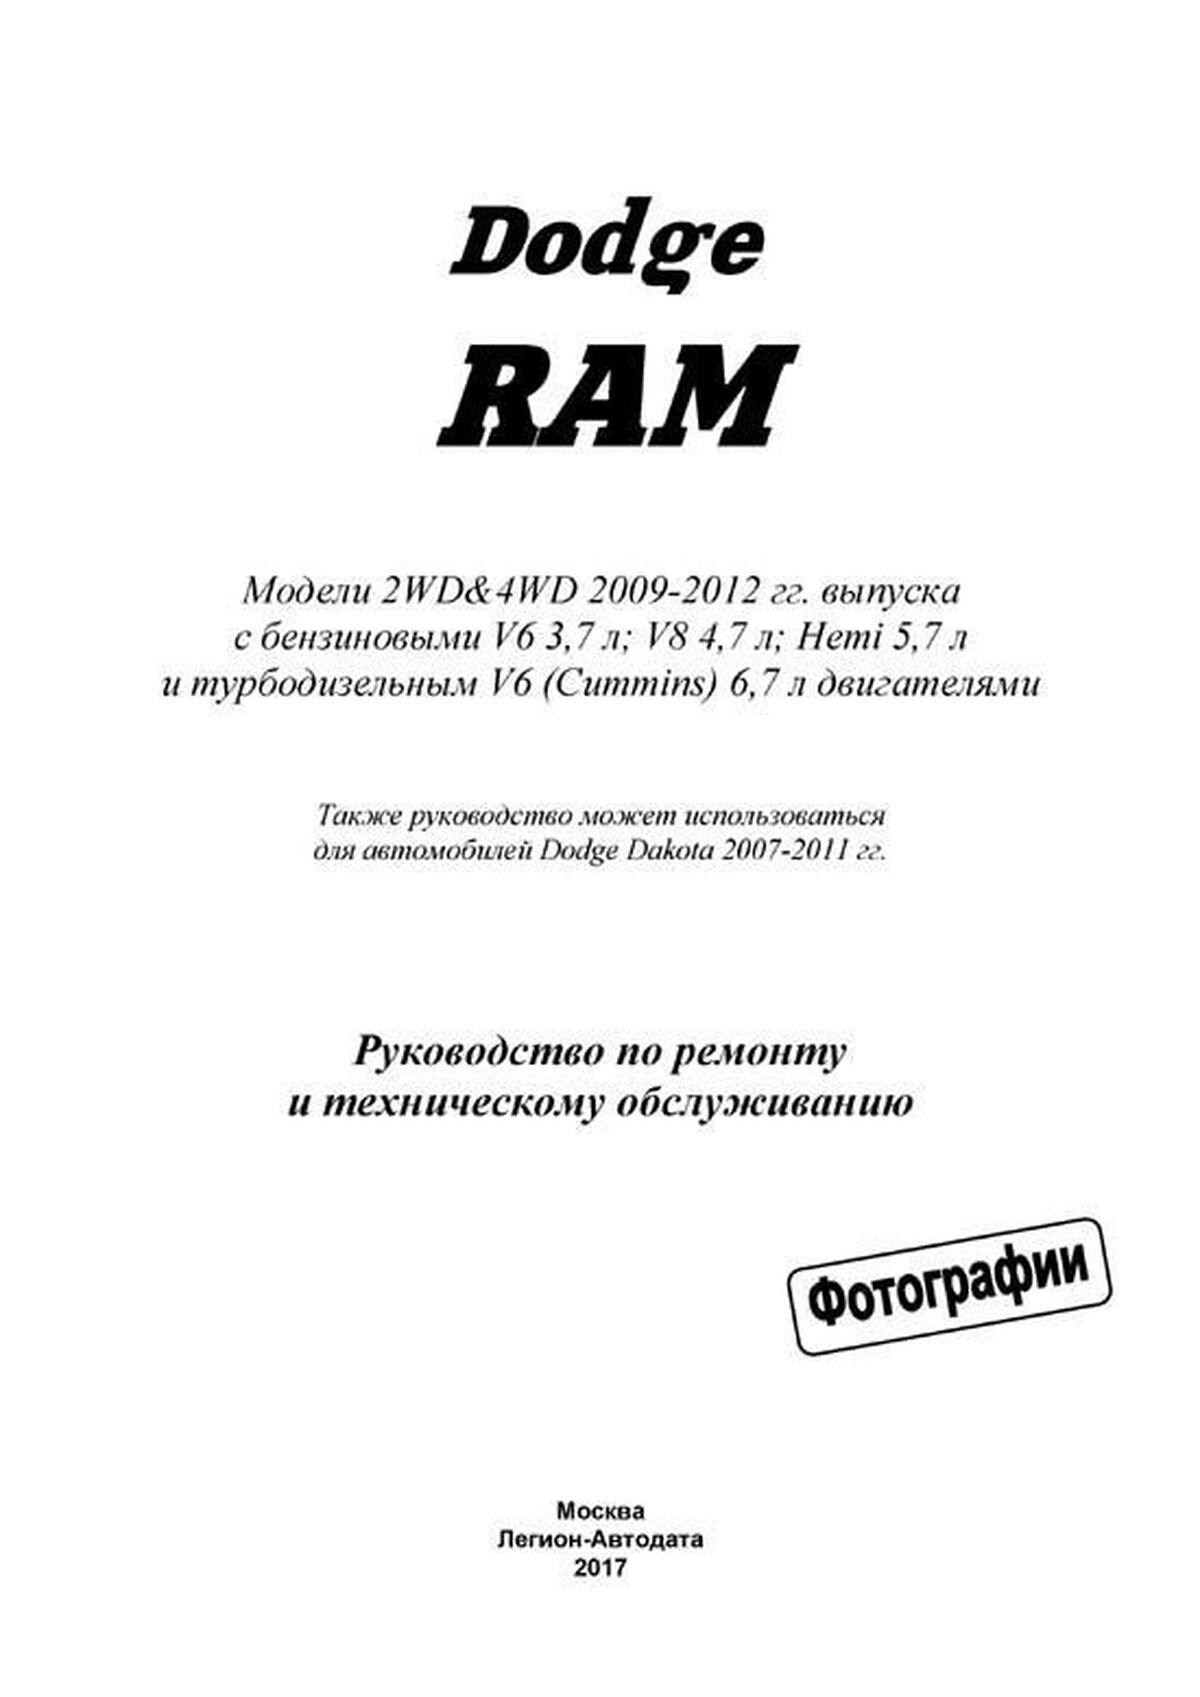 Книга: DODGE RAM (б , д) 2009-2012 г.в., рем., экспл., то | Легион-Aвтодата